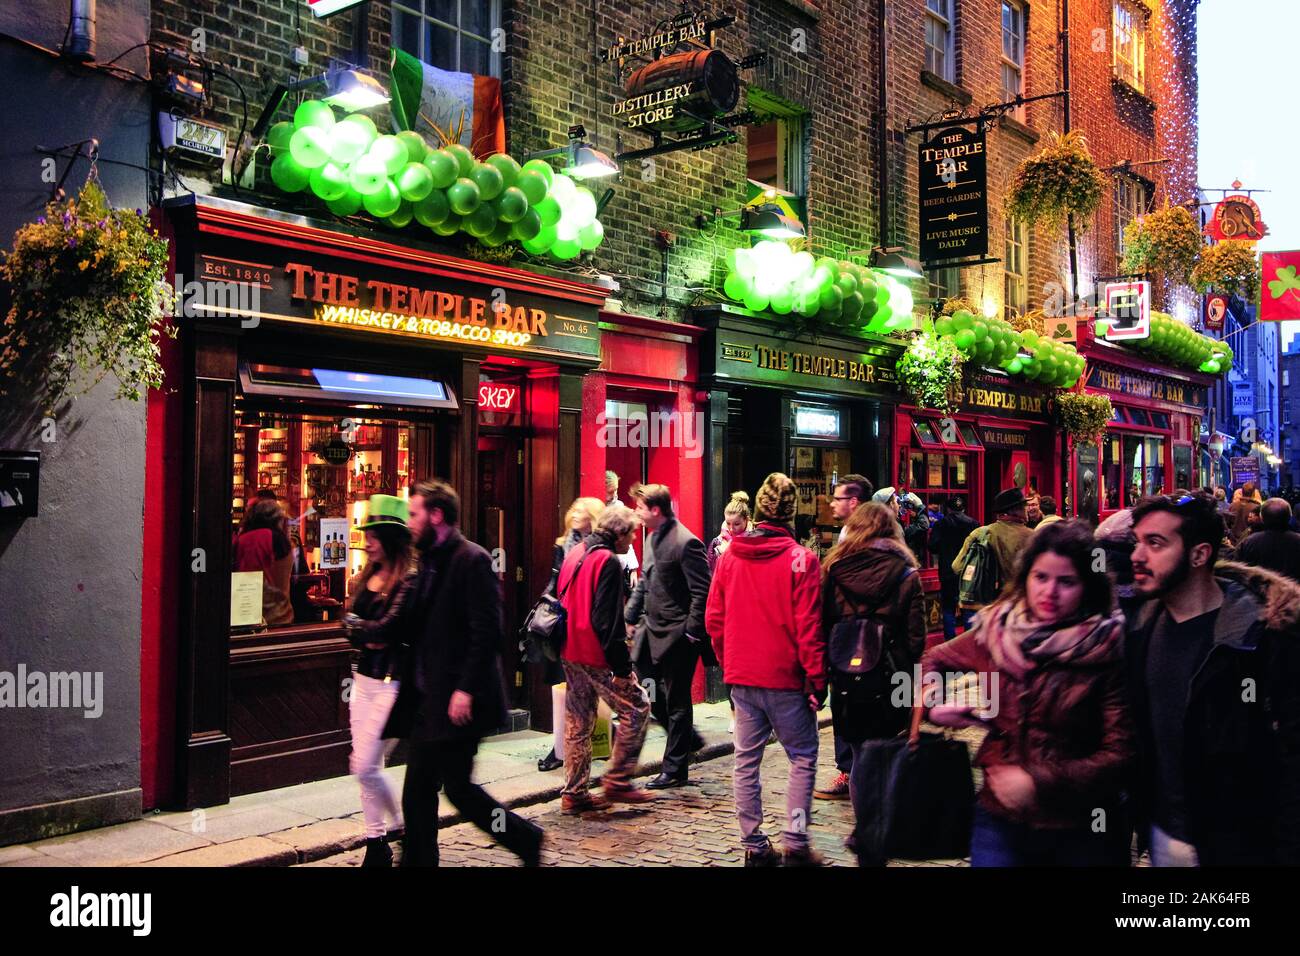 Dublino: pub, ristoranti und gallerie in der Temple Bar, Irlanda | Utilizzo di tutto il mondo Foto Stock